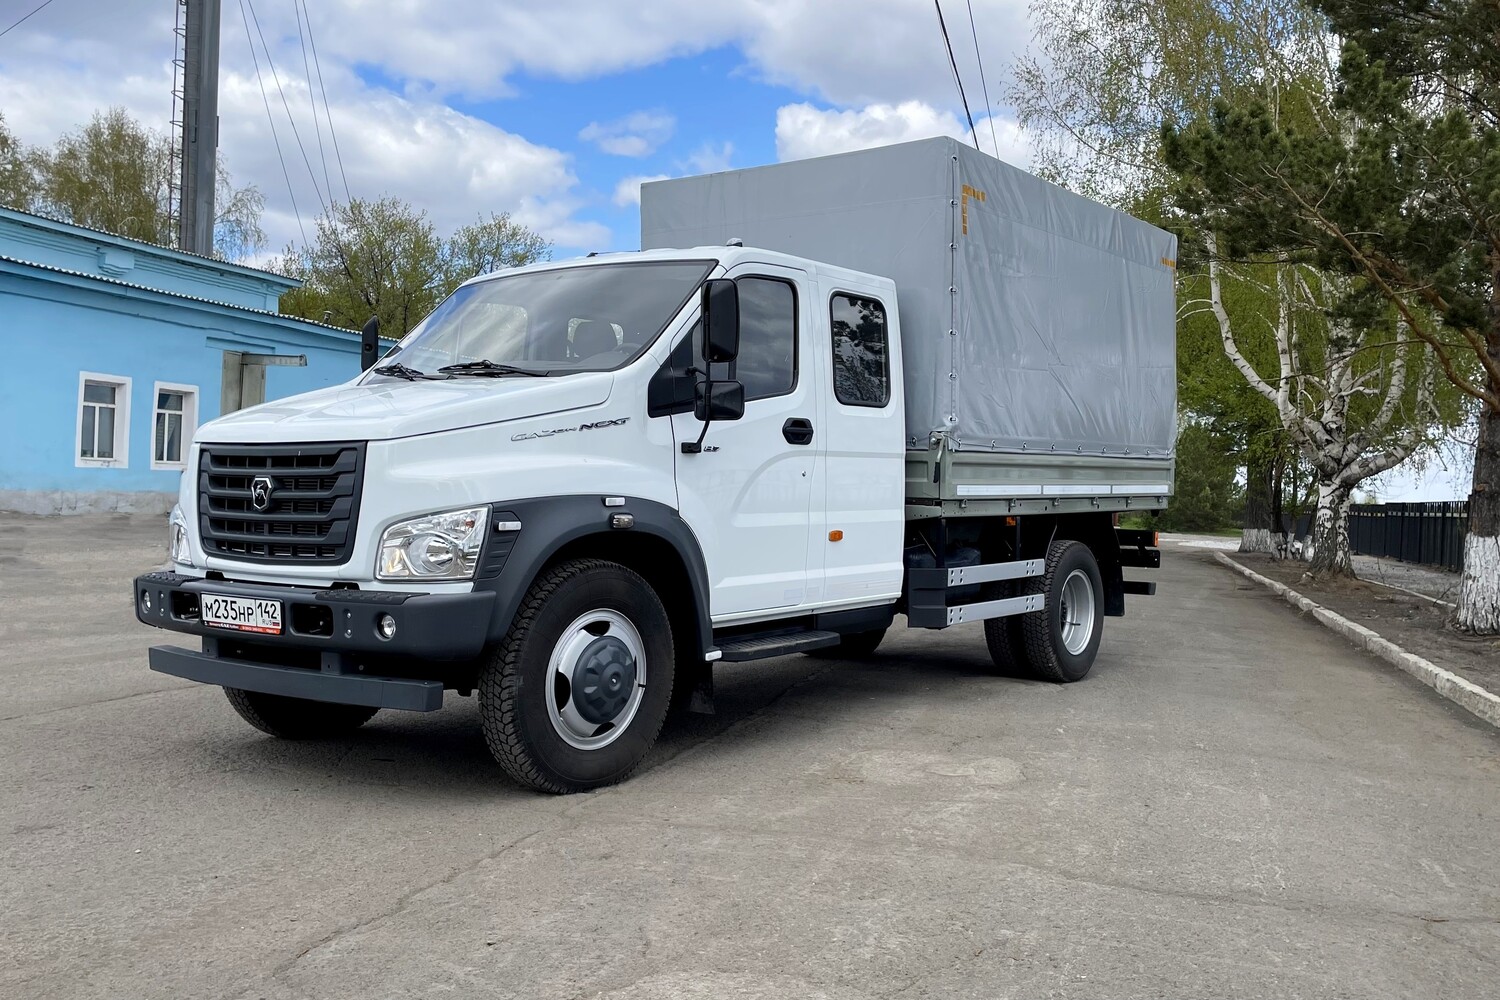 Новый российский грузовой фургон будет доставлять ремонтников Белтранса на угольные предприятия компании. Стройсервис